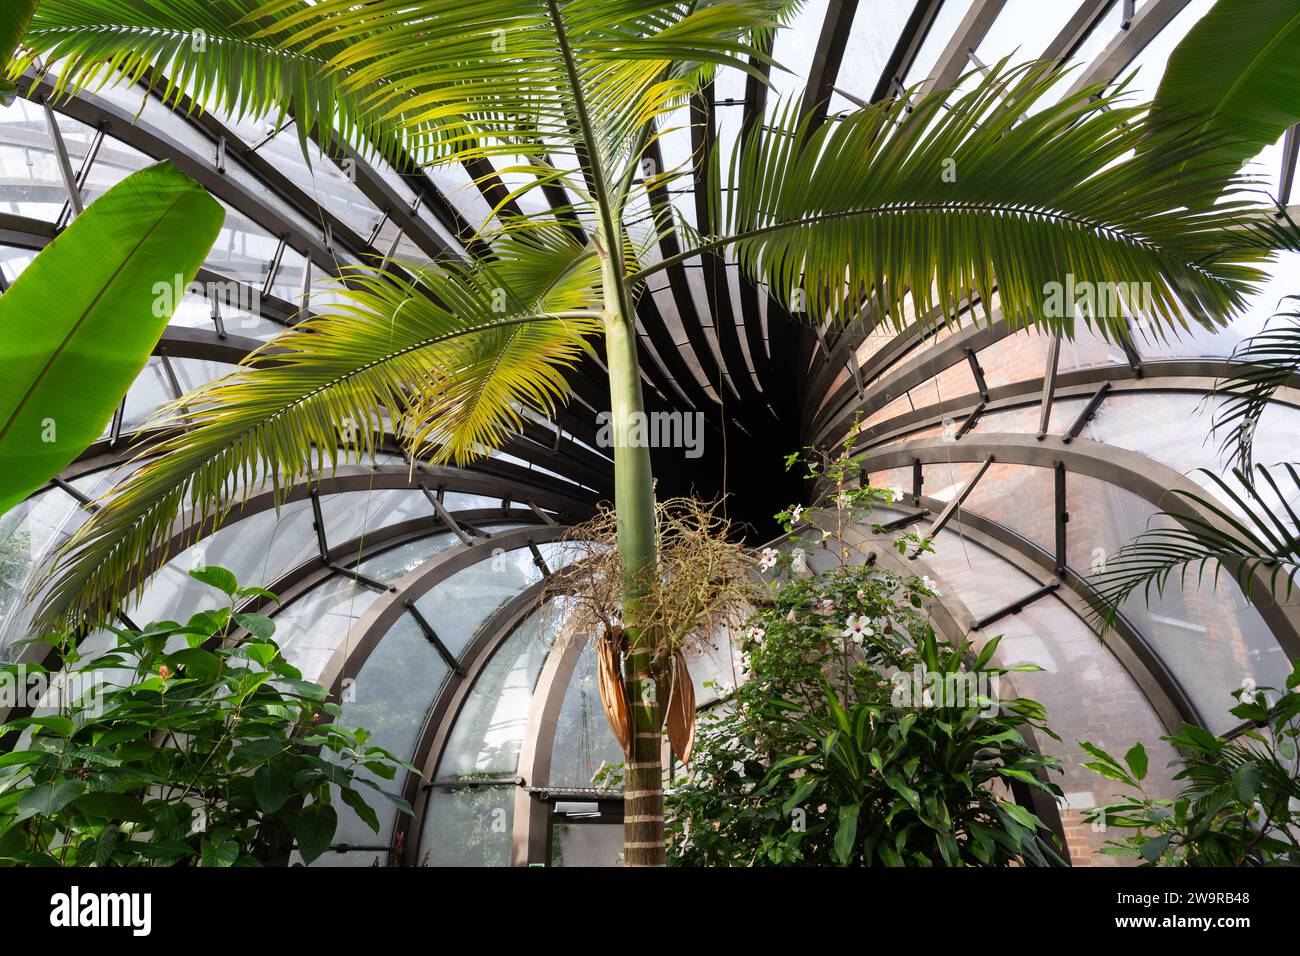 Intérieur de l'une des serres en cascade entrelacées avec un climat tropical chaud et humide à Bombay Sapphire, Laverstoke Mill. ROYAUME-UNI Banque D'Images